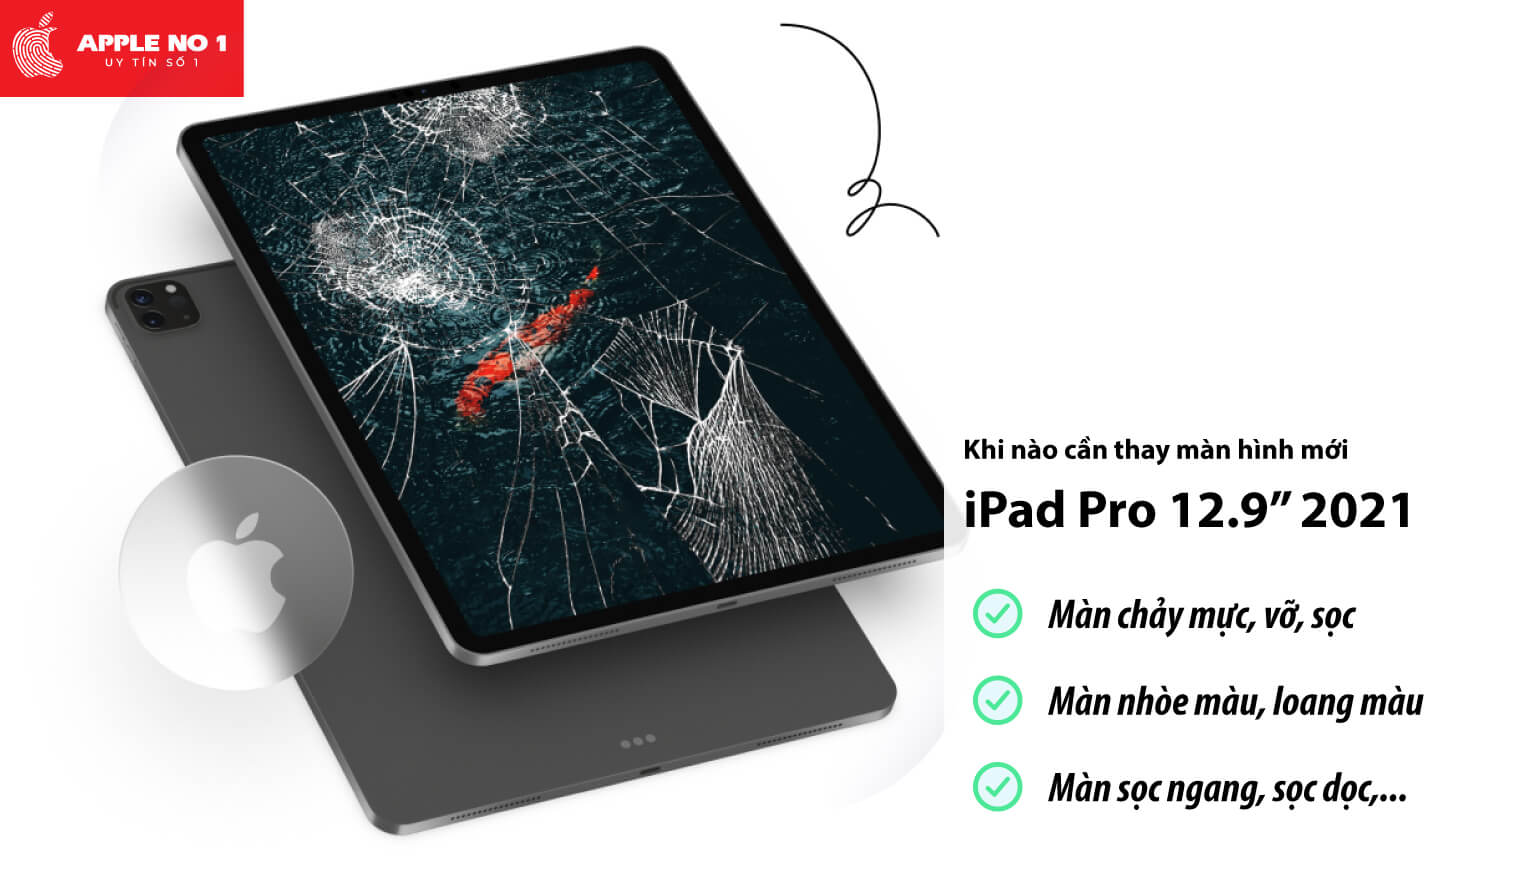 Thay màn hình iPad Pro 12.9 inch 2021 khi nào?